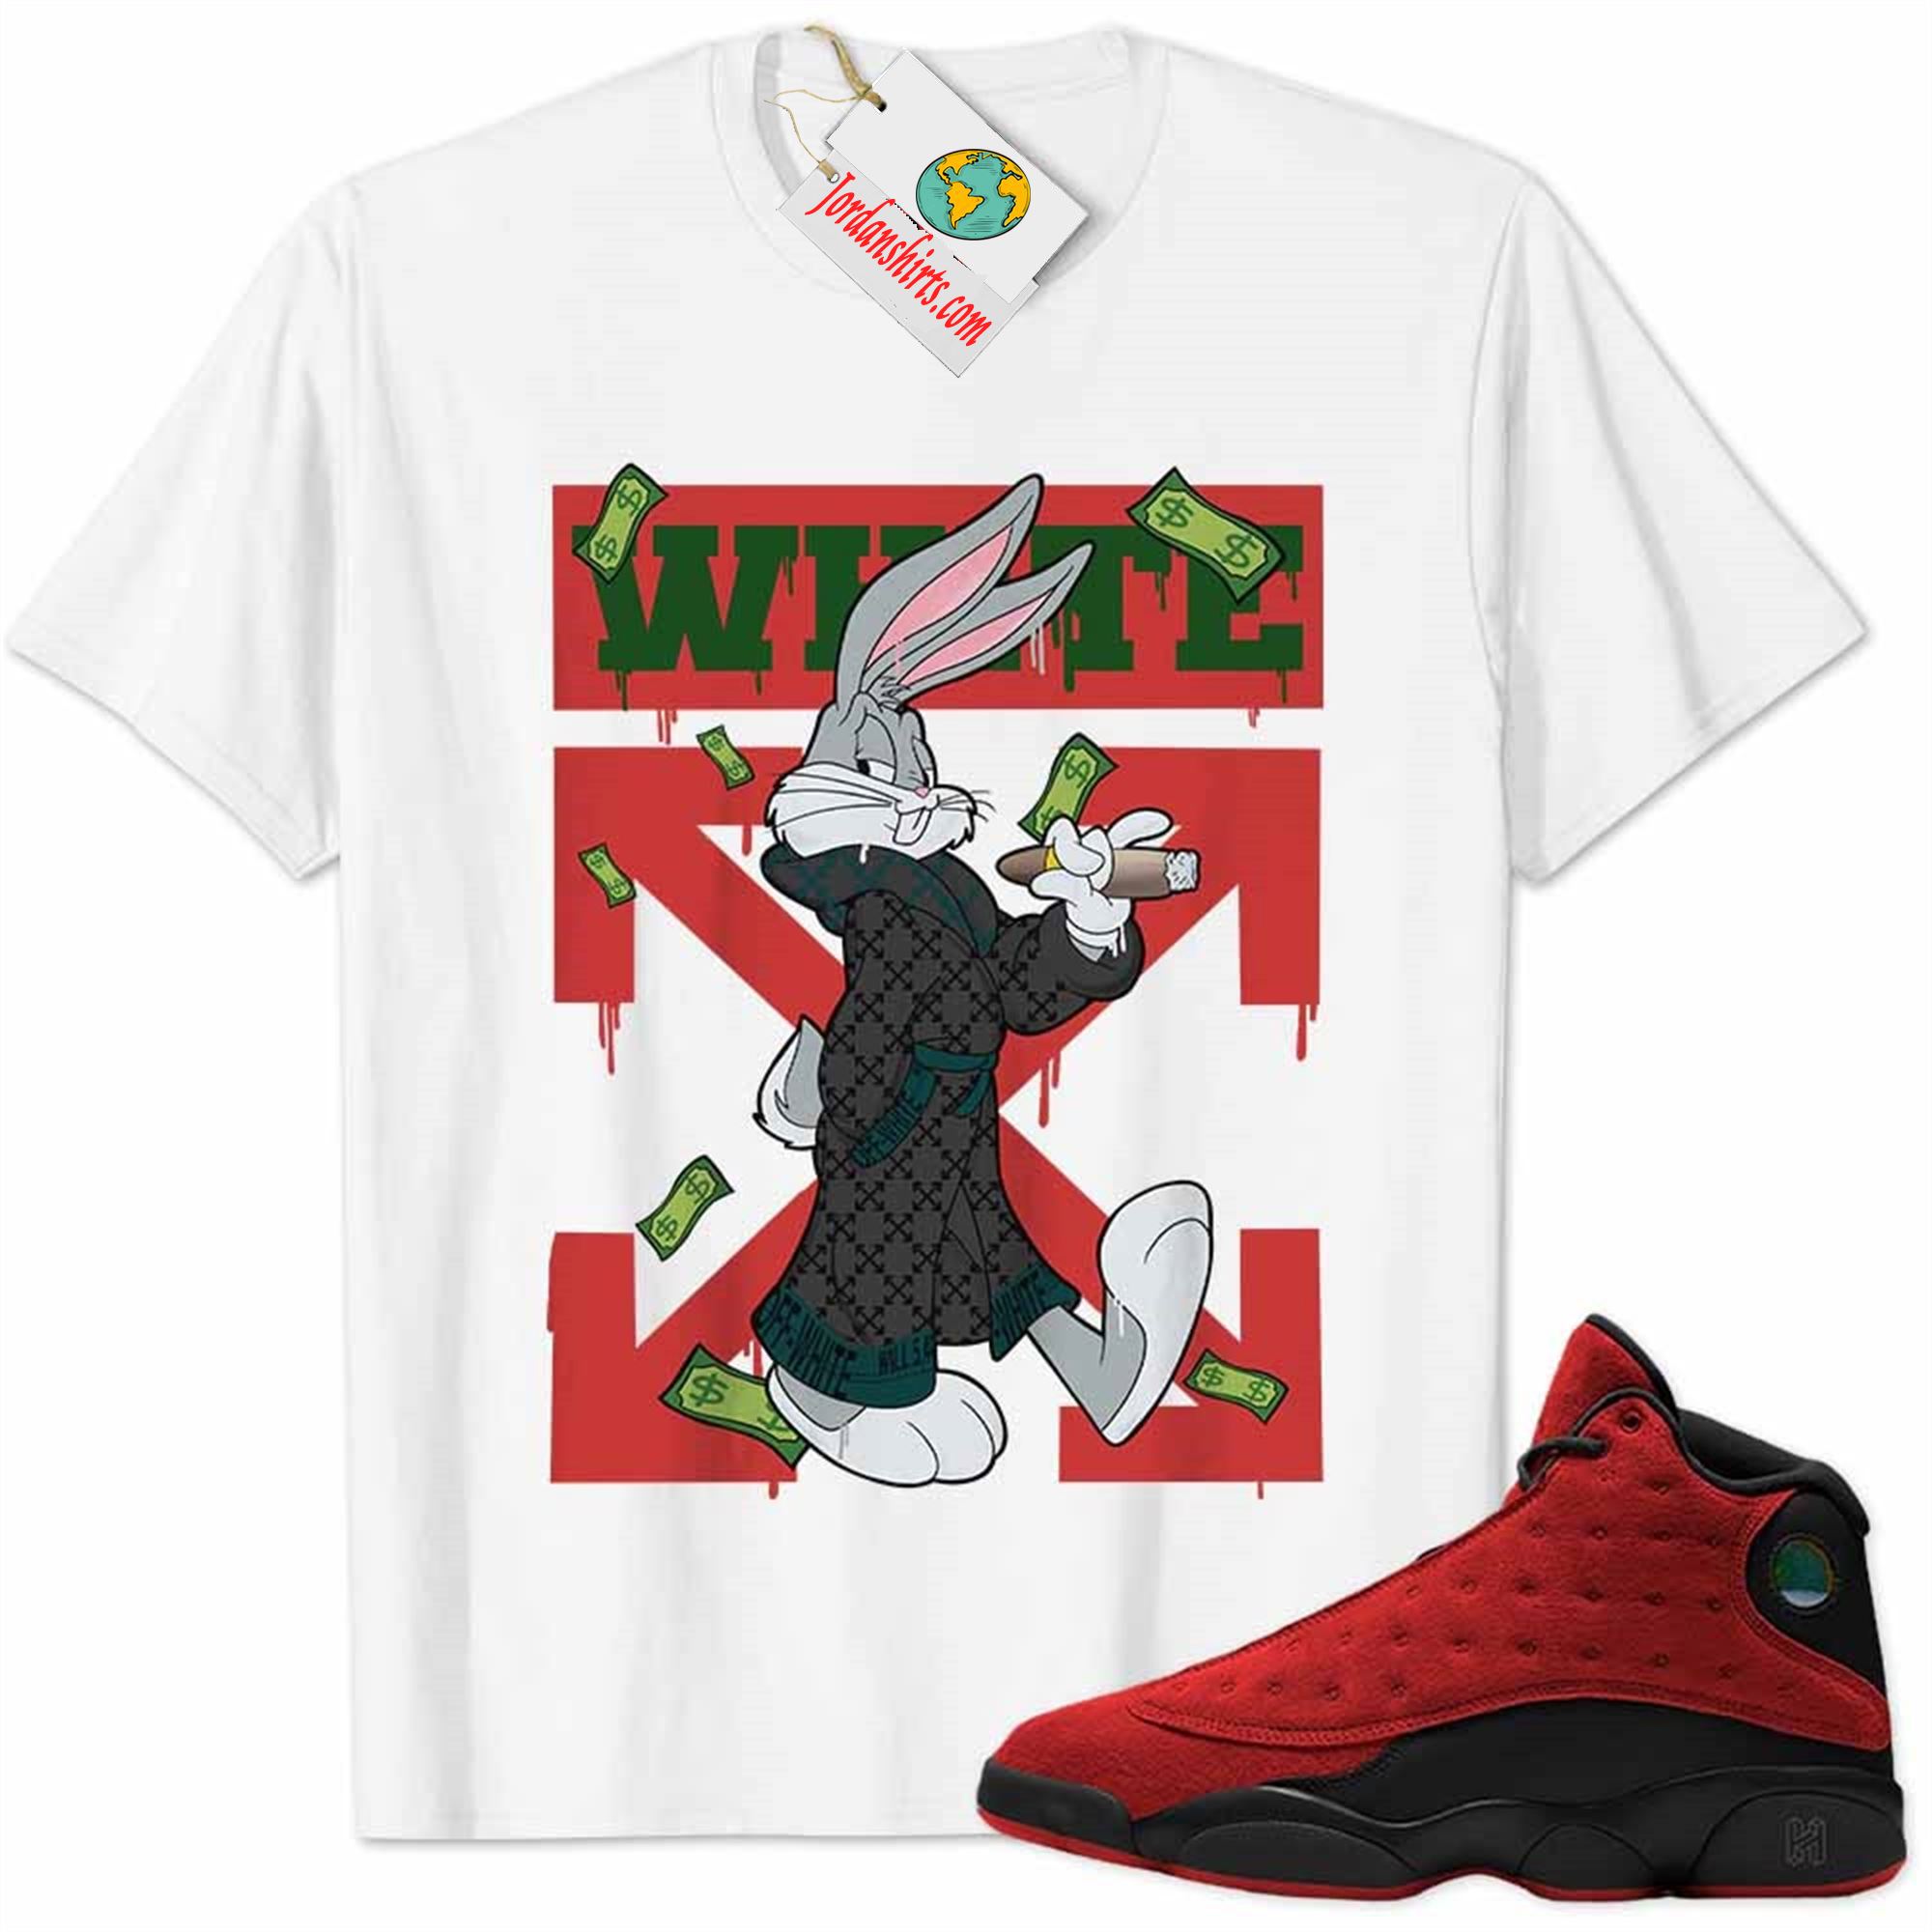 Jordan 13 Shirt, Jordan 13 Reverse Bred Shirt Bug Bunny Smokes Weed Money Falling White Size Up To 5xl